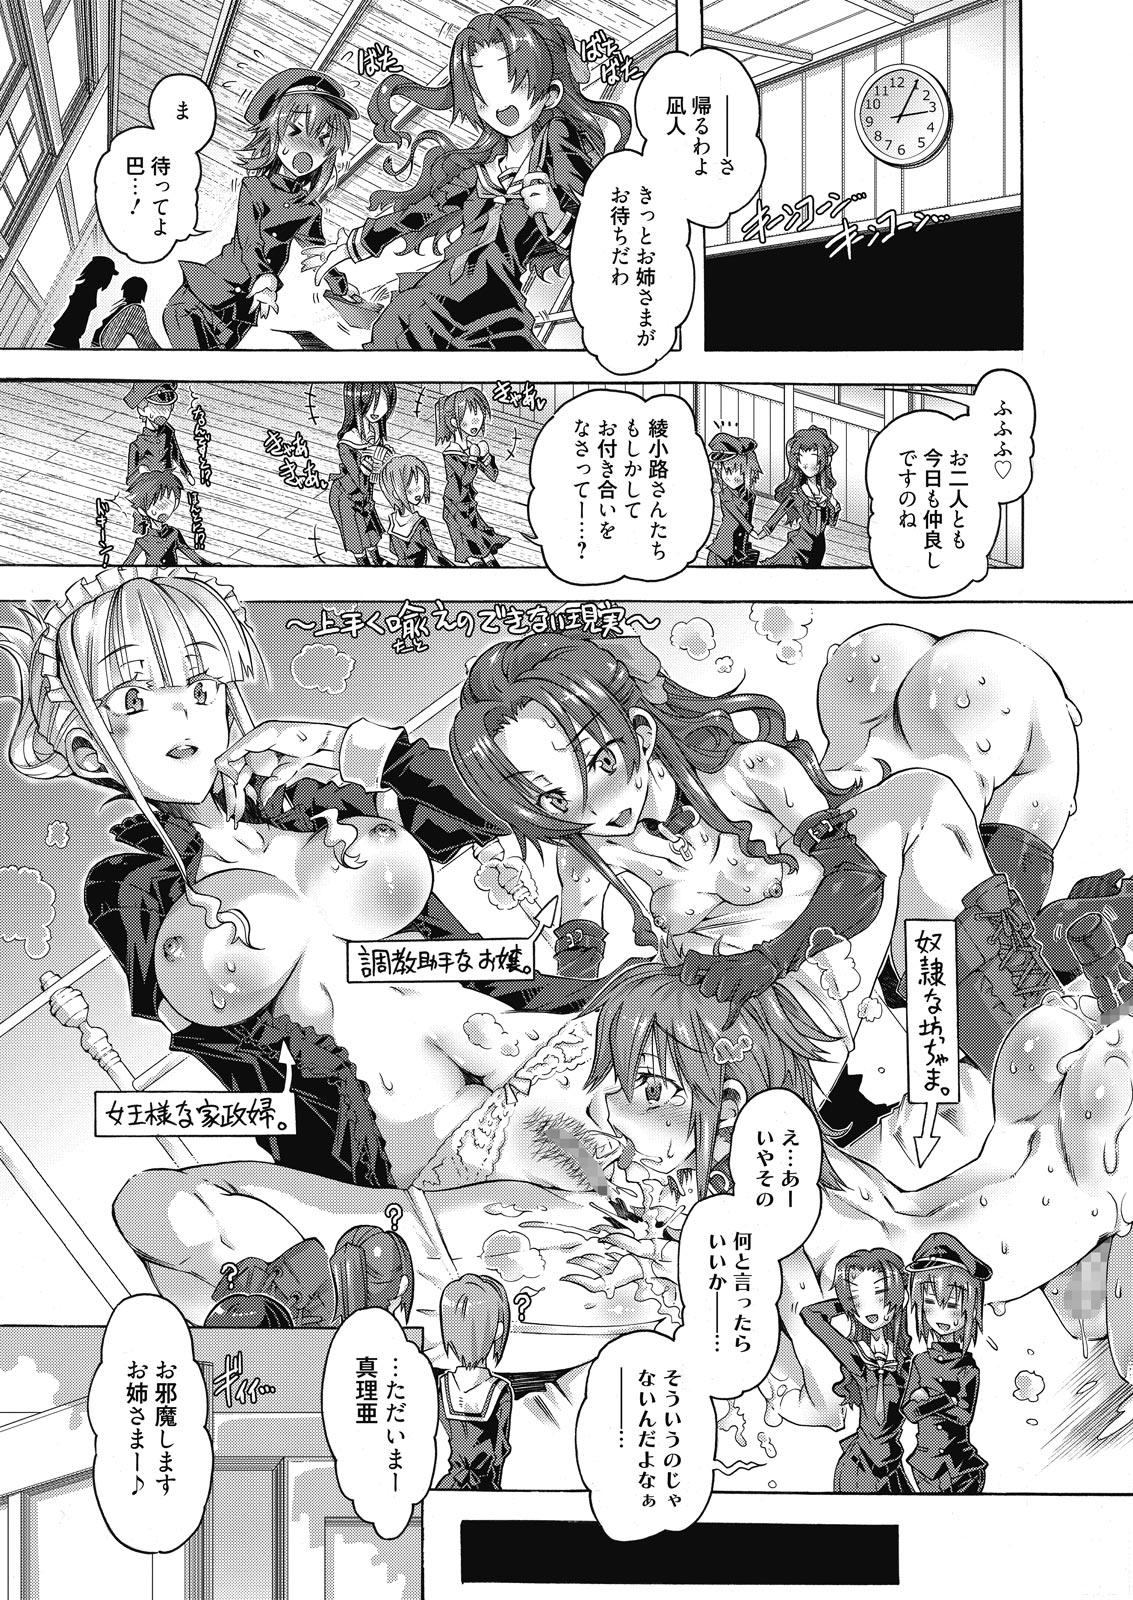 Romance Web Manga Bangaichi Vol. 10 Alternative - Page 3